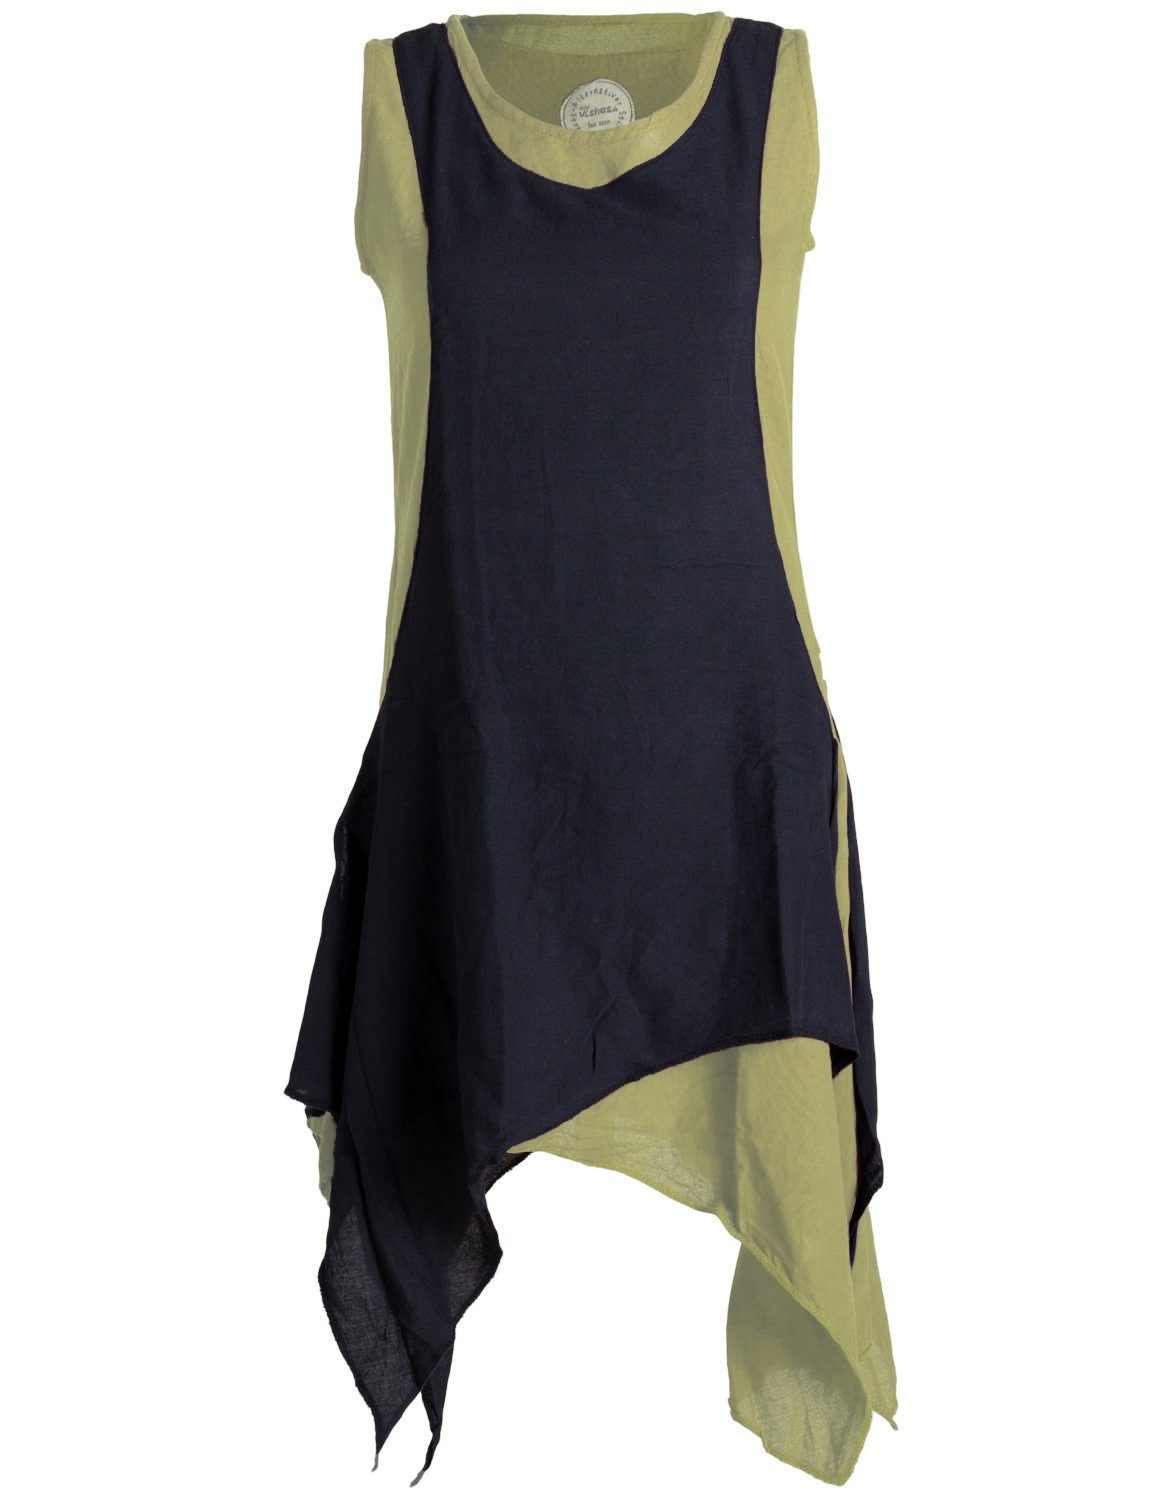 Vishes Sommerkleid Ärmelloses Lagenlook Kleid handgewebte Baumwolle Goa, Boho, Hippie Style olive-schwarz